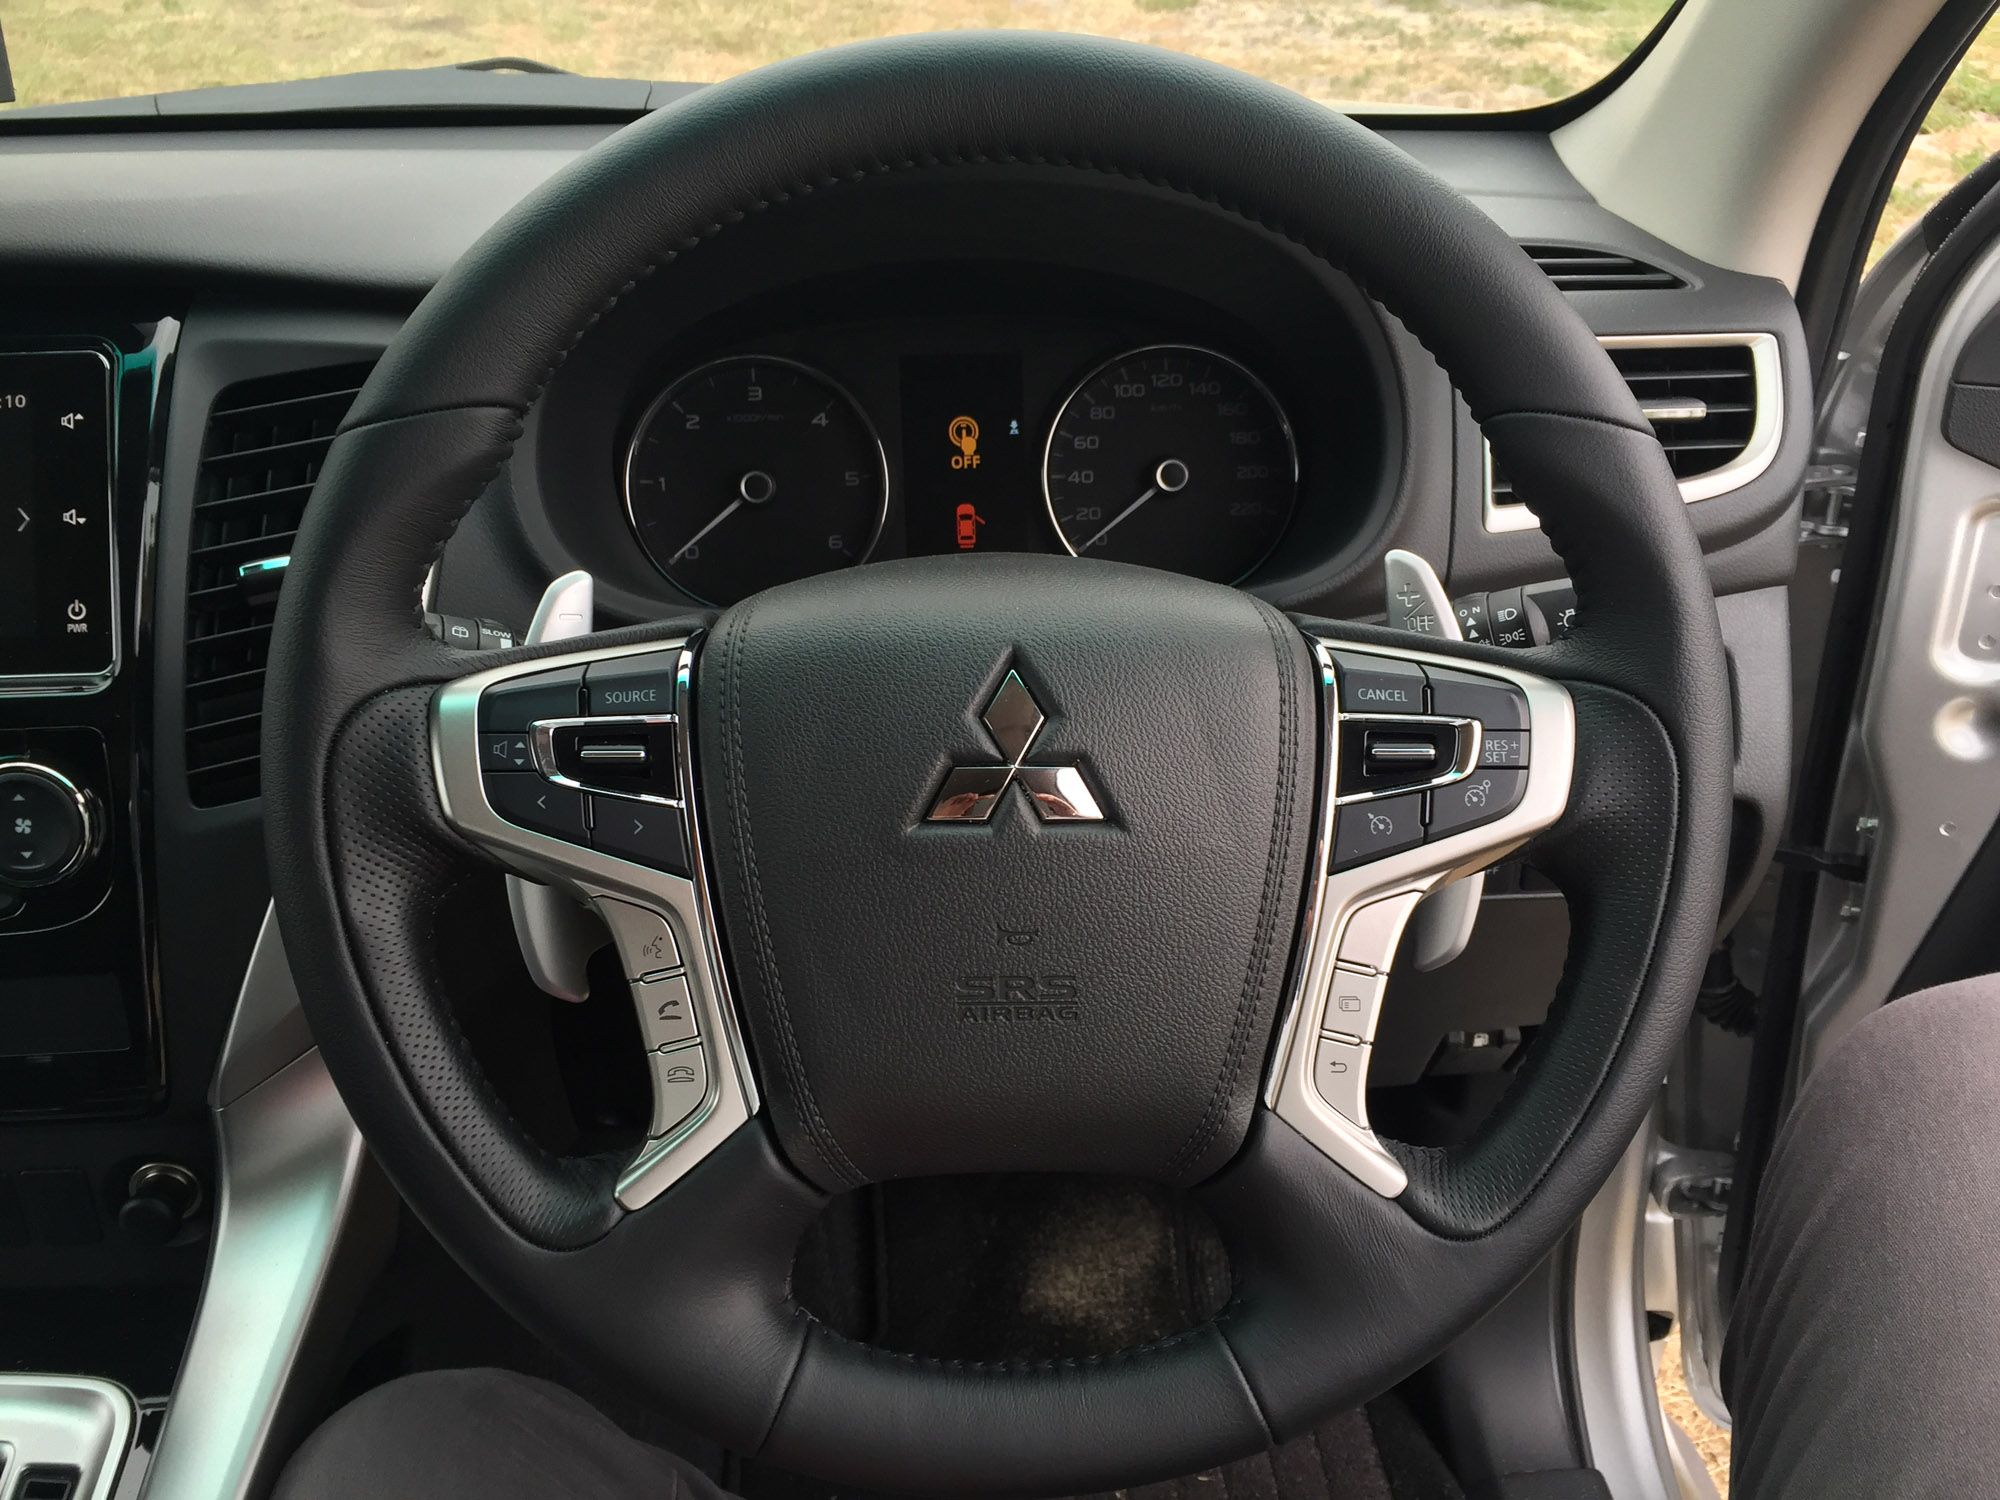 2016 Mitsubishi Pajero Sport Speedometer And Steering (View 9 of 23)